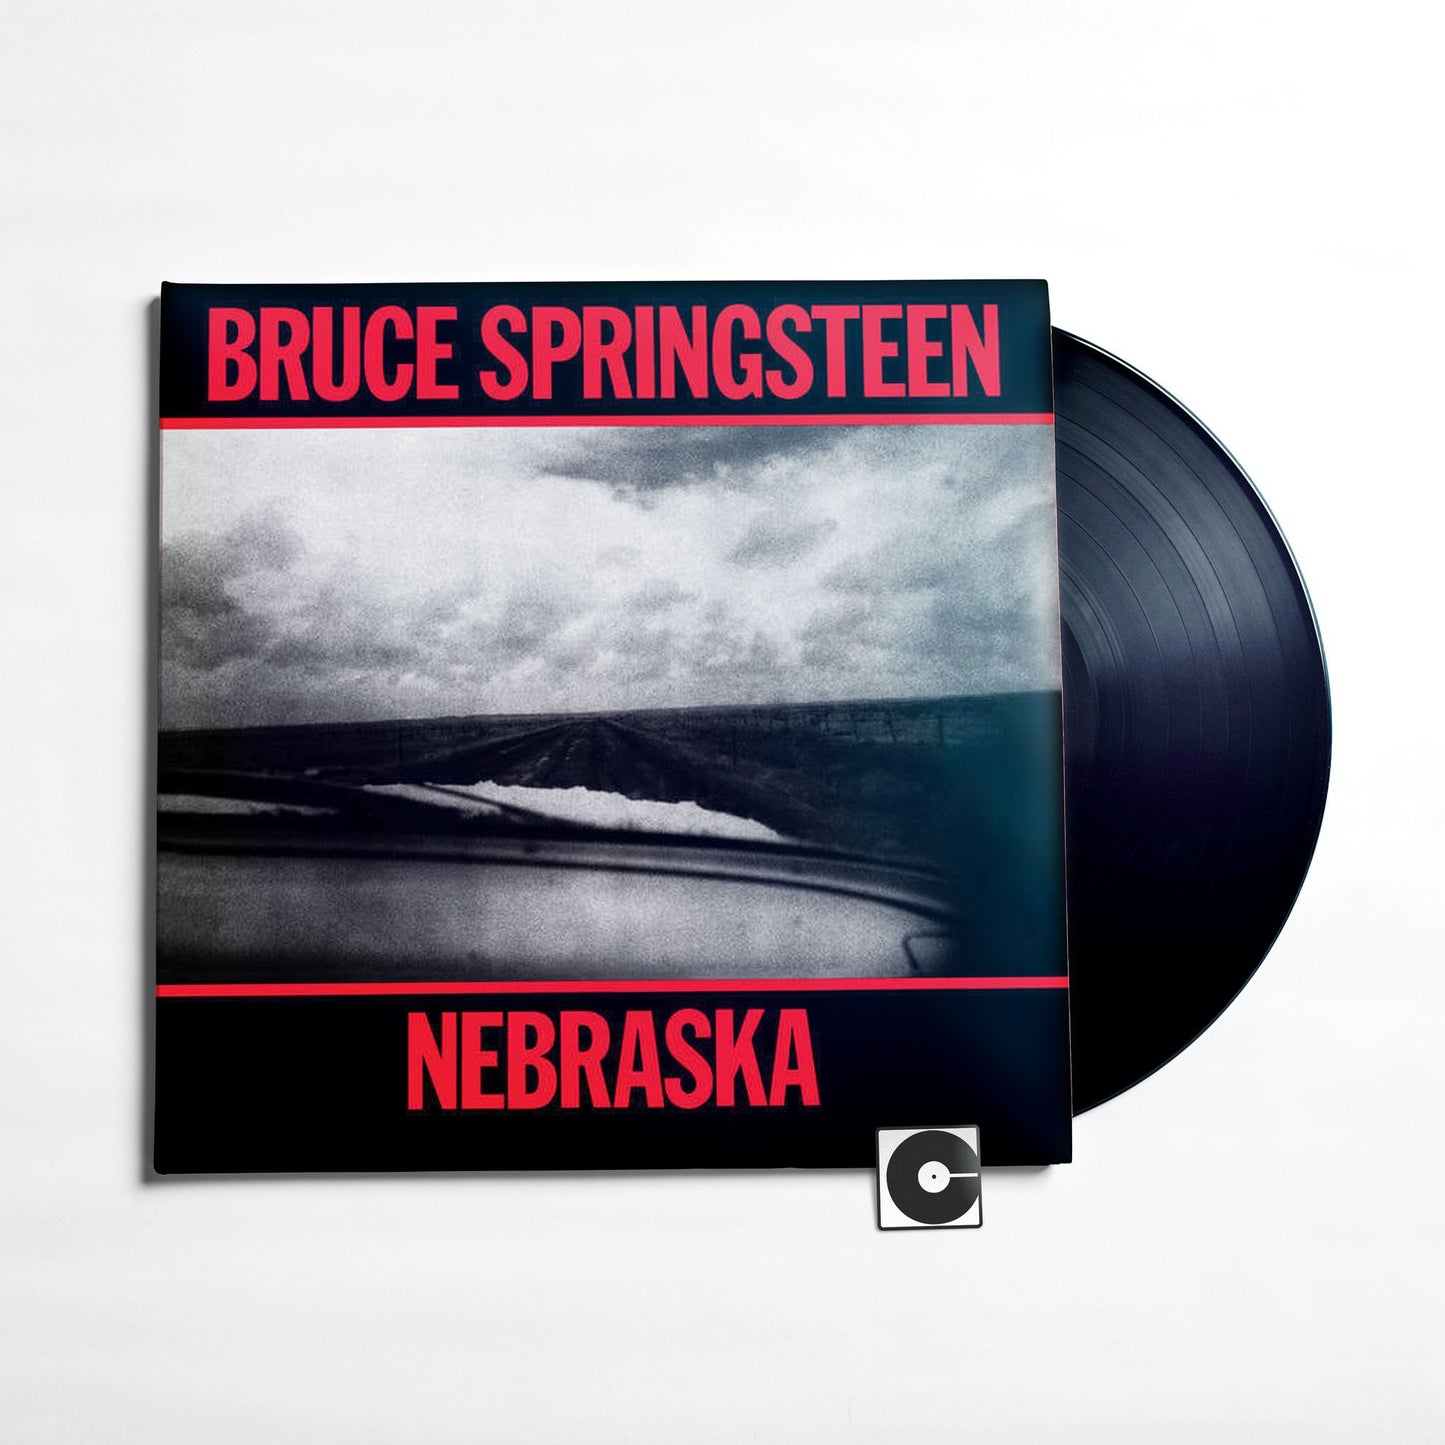 Bruce Springsteen - "Nebraska"